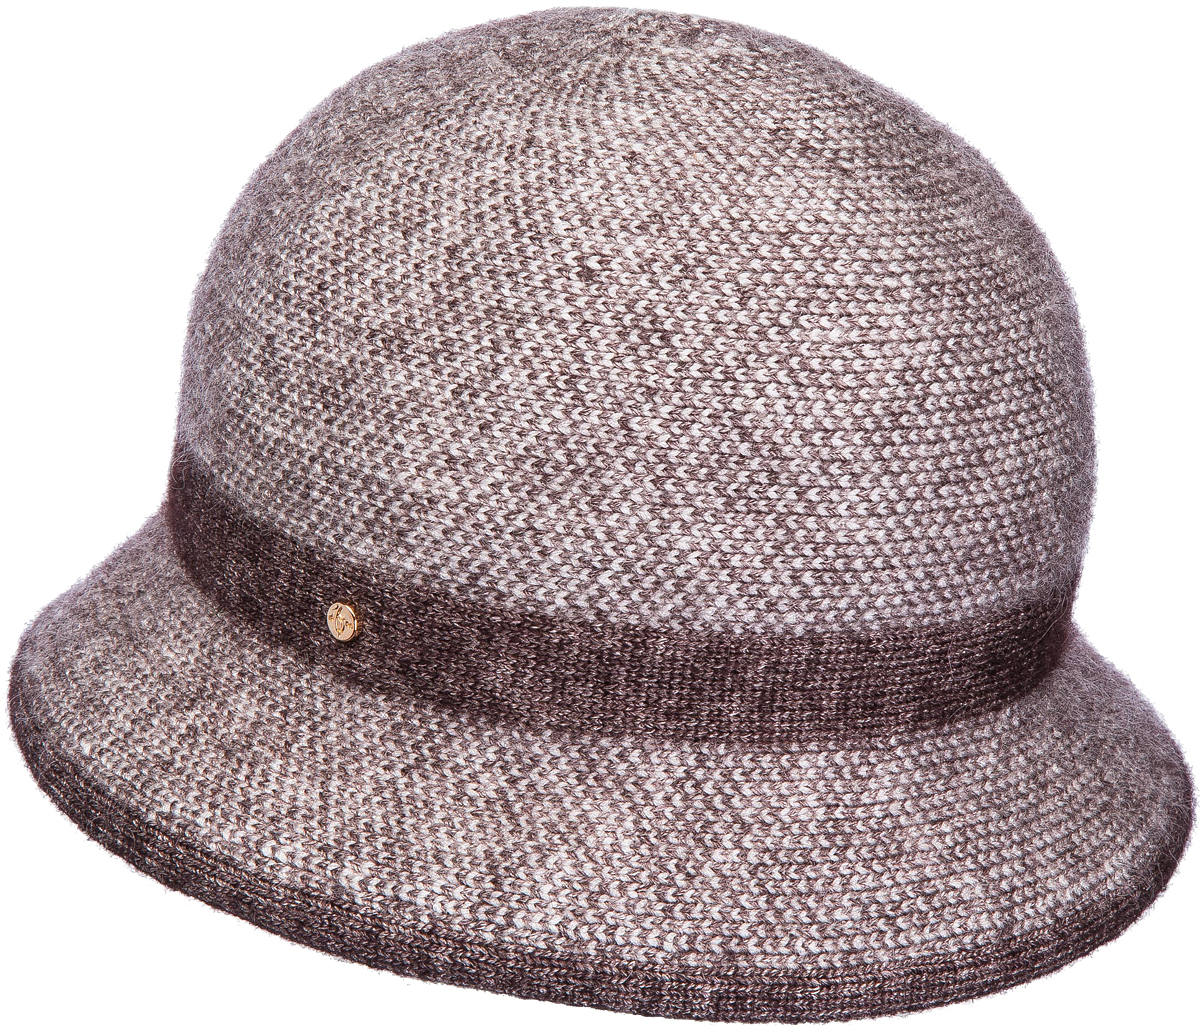 Шляпа женская Canoe Dulsinea, цвет: коричневый. 3446288. Размер 56/58